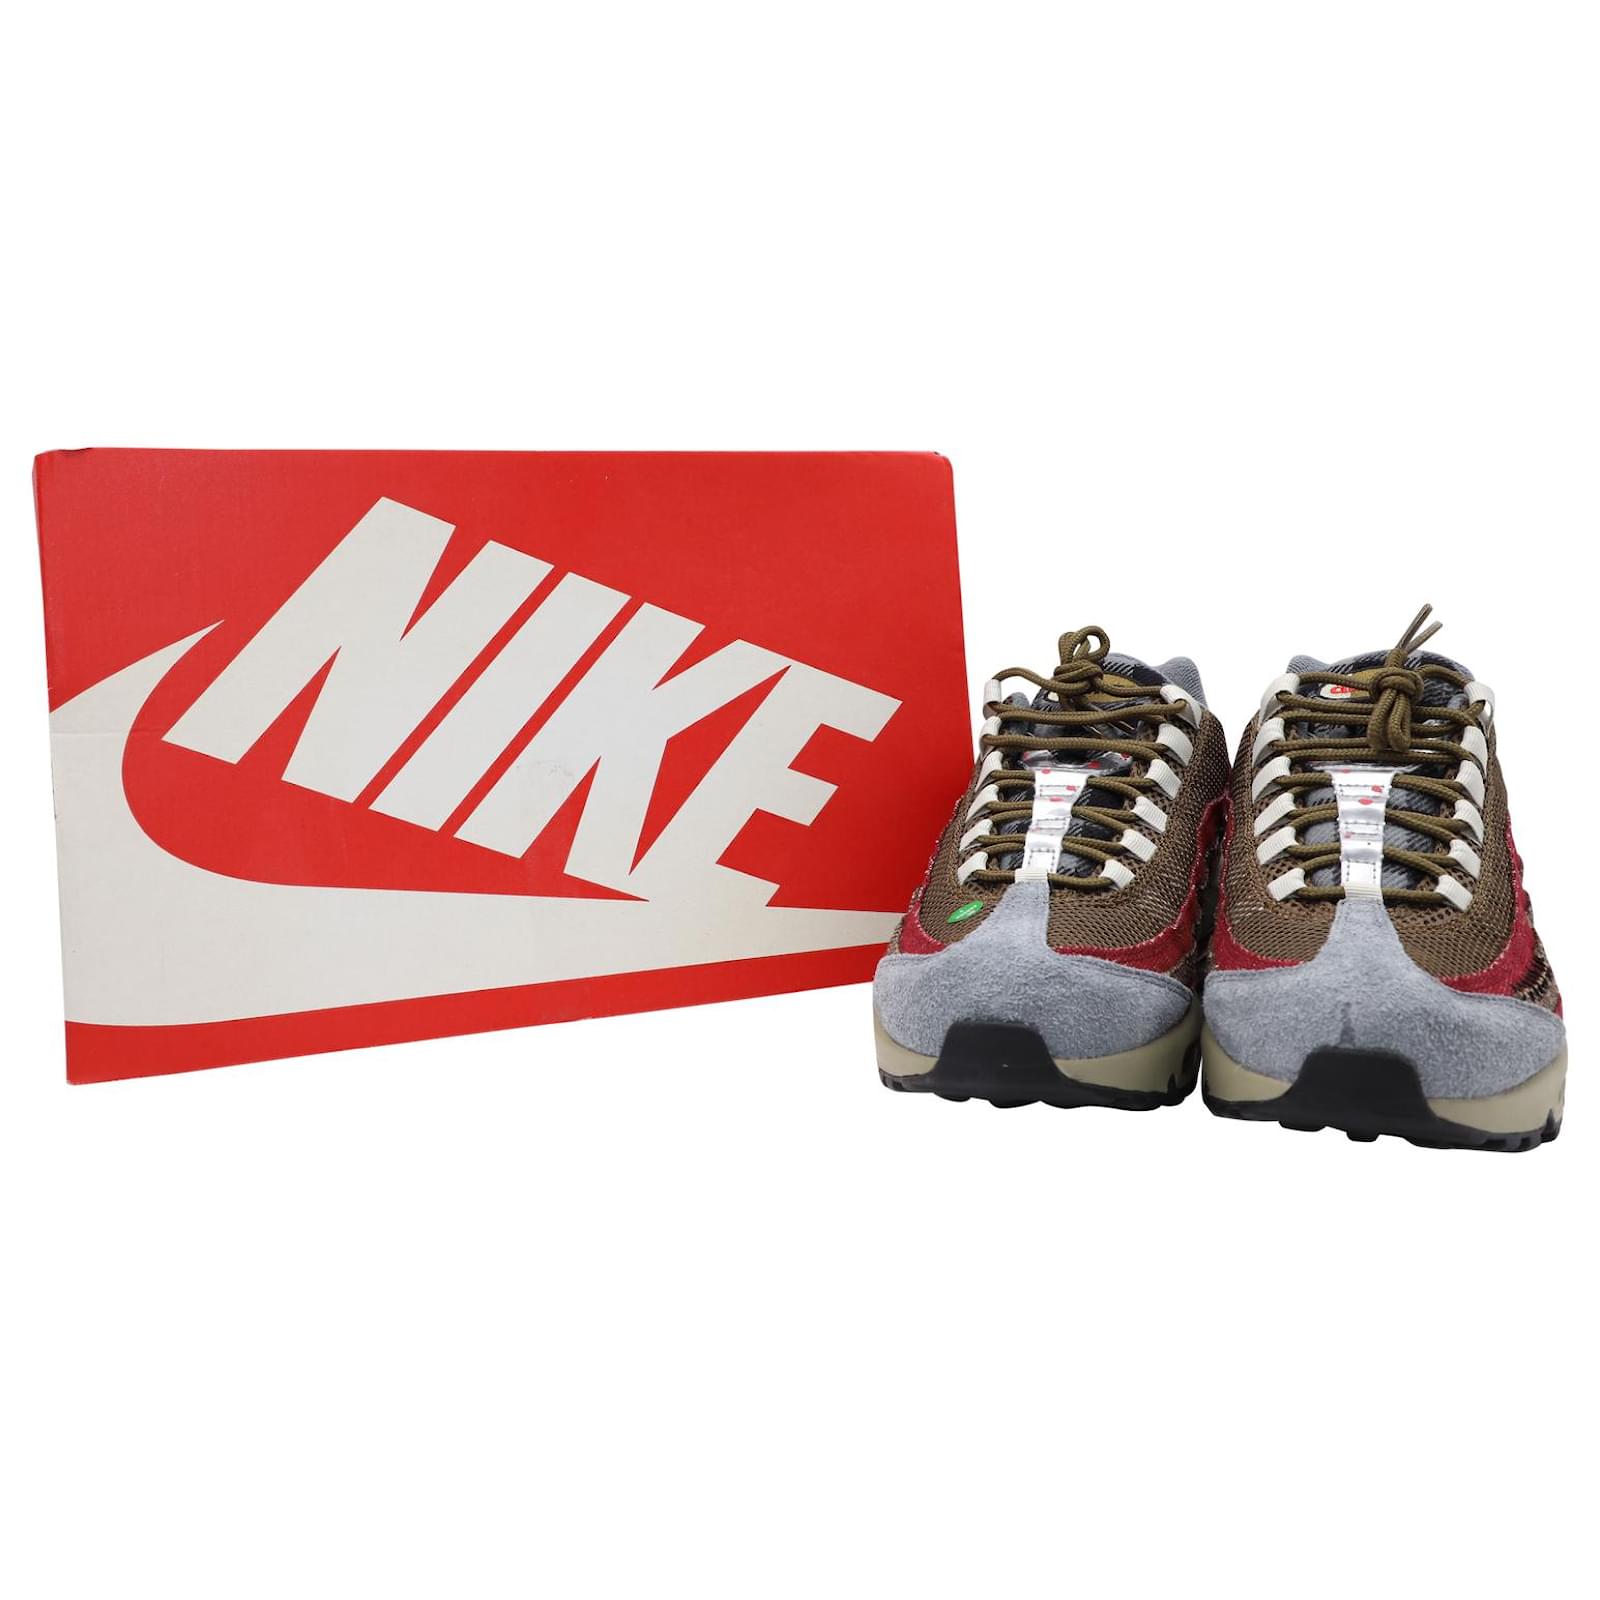 nombre de la marca Frugal Generalizar Nike Air Max 95 Freddy Krueger en terciopelo marrón, rojo universitario, y  el equipo de gamuza roja Suecia ref.567845 - Joli Closet